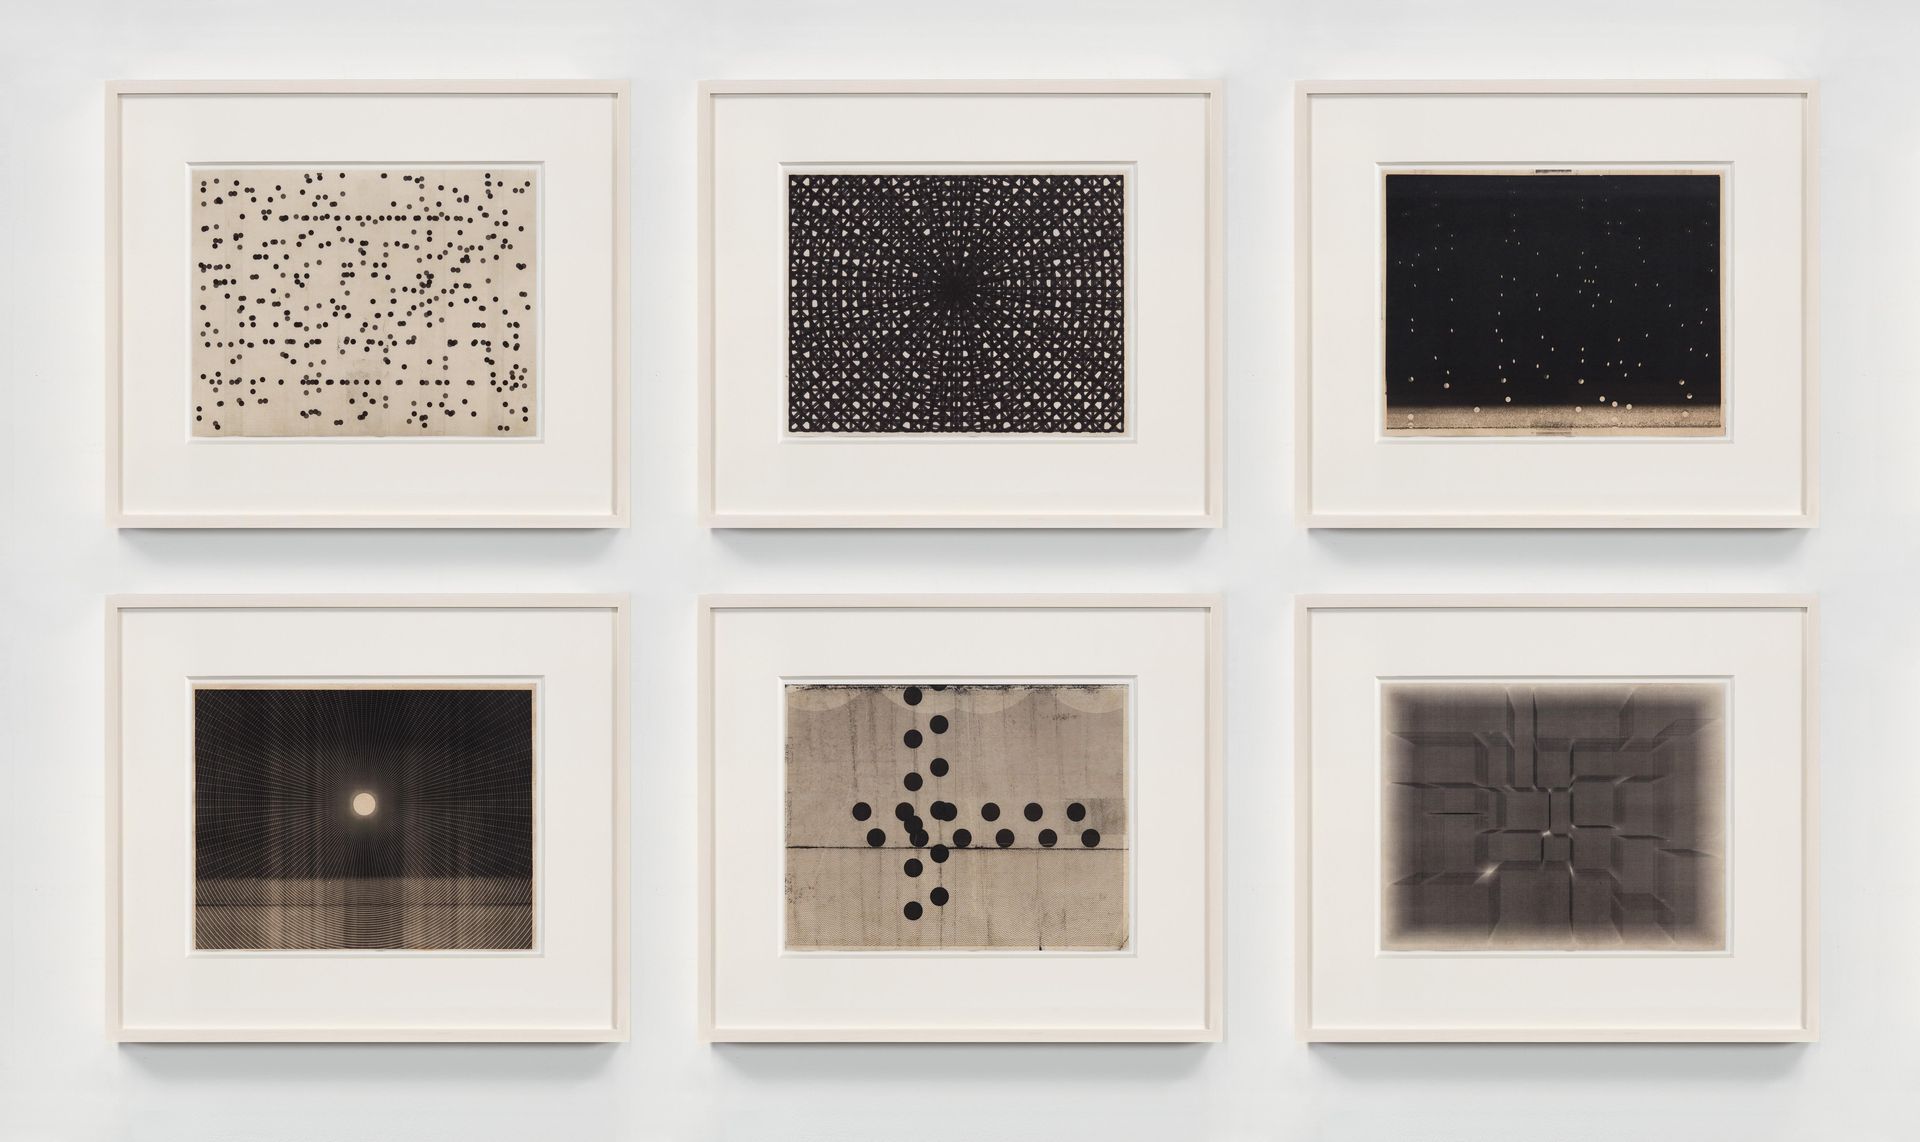 Marsha Cottrell, Untitled (Notation), 2020 / Diagram (Radiating)_2, 2019 / Untitled, 2021 / Untitled (1:20:51 pm), 2021 / Untitled, 2020 / Environments_19, 2018, Courtesy die Künstlerin und Petra Rinck Galerie